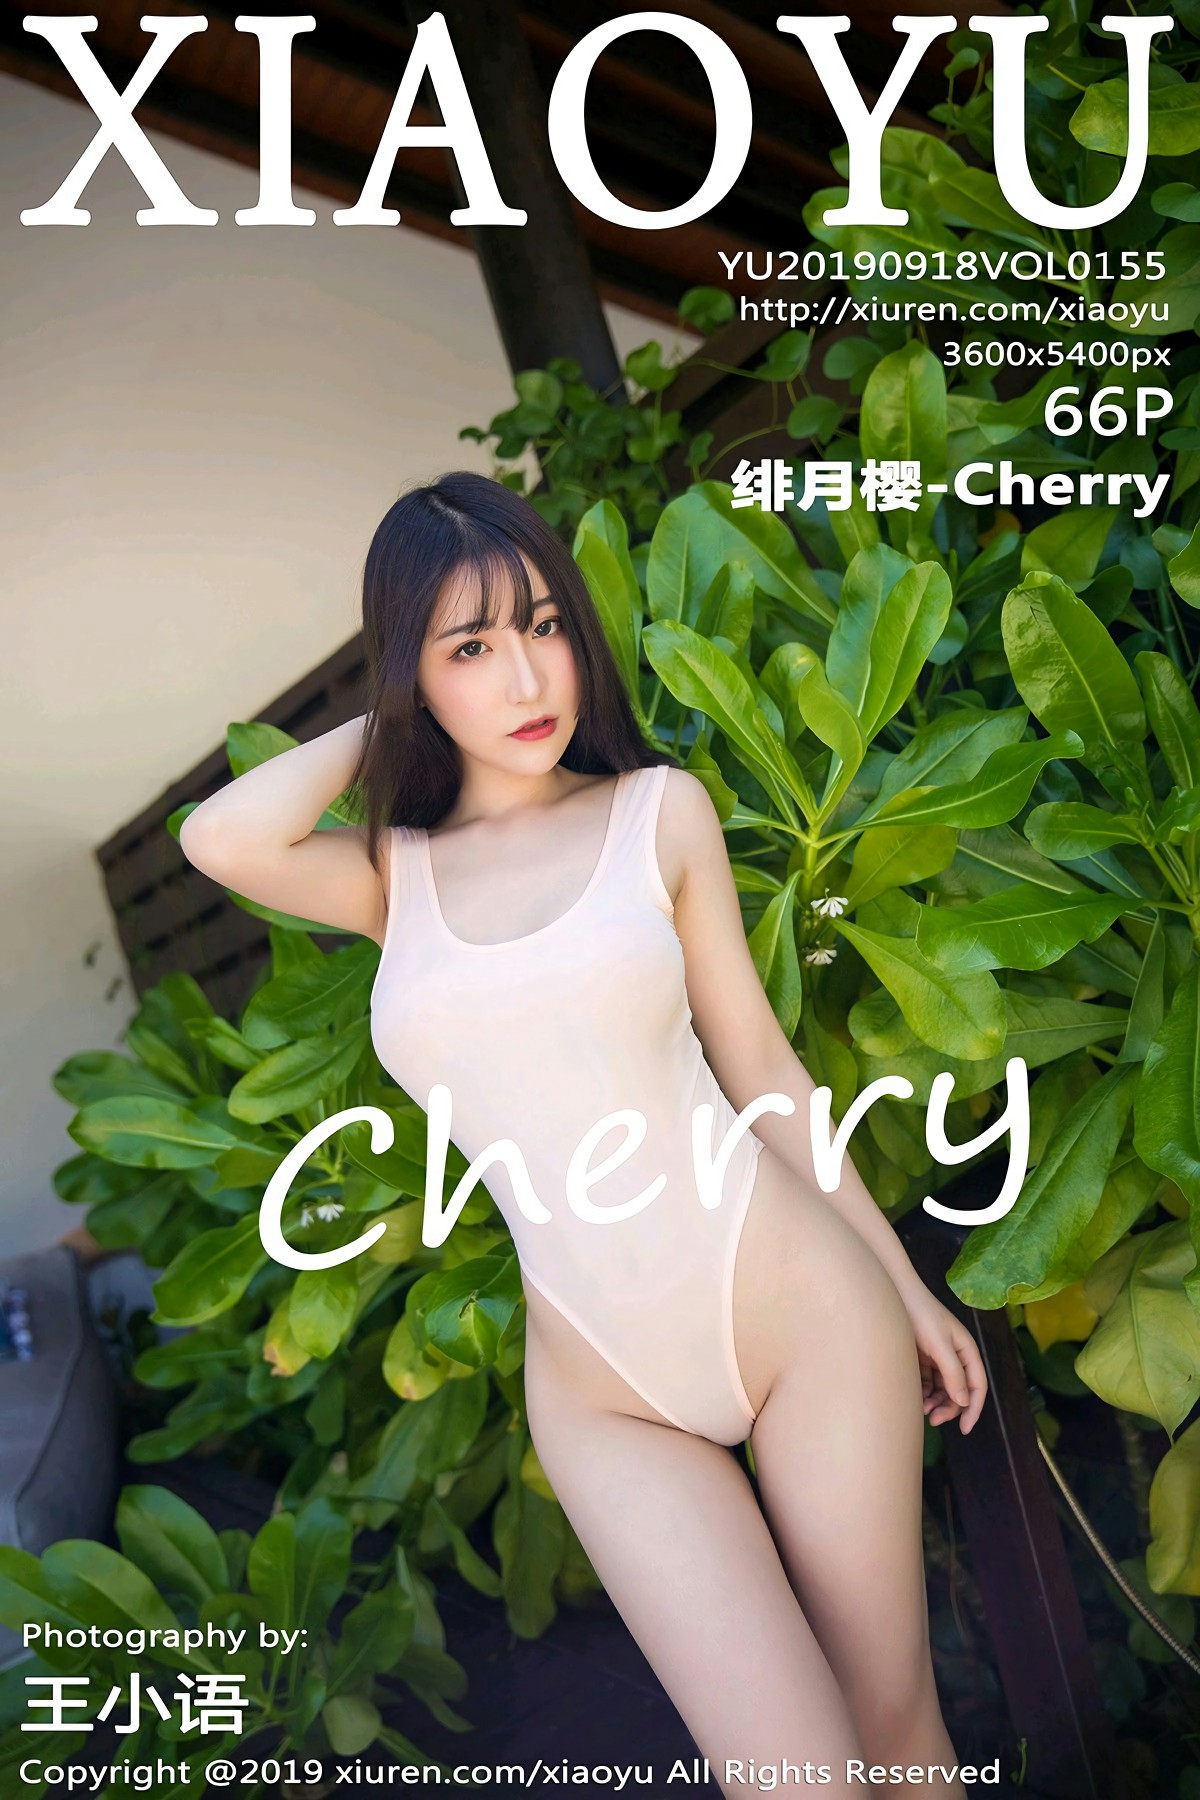 [XIAOYU语画界]2019.09.18 VOL.155 绯月樱-Cherry